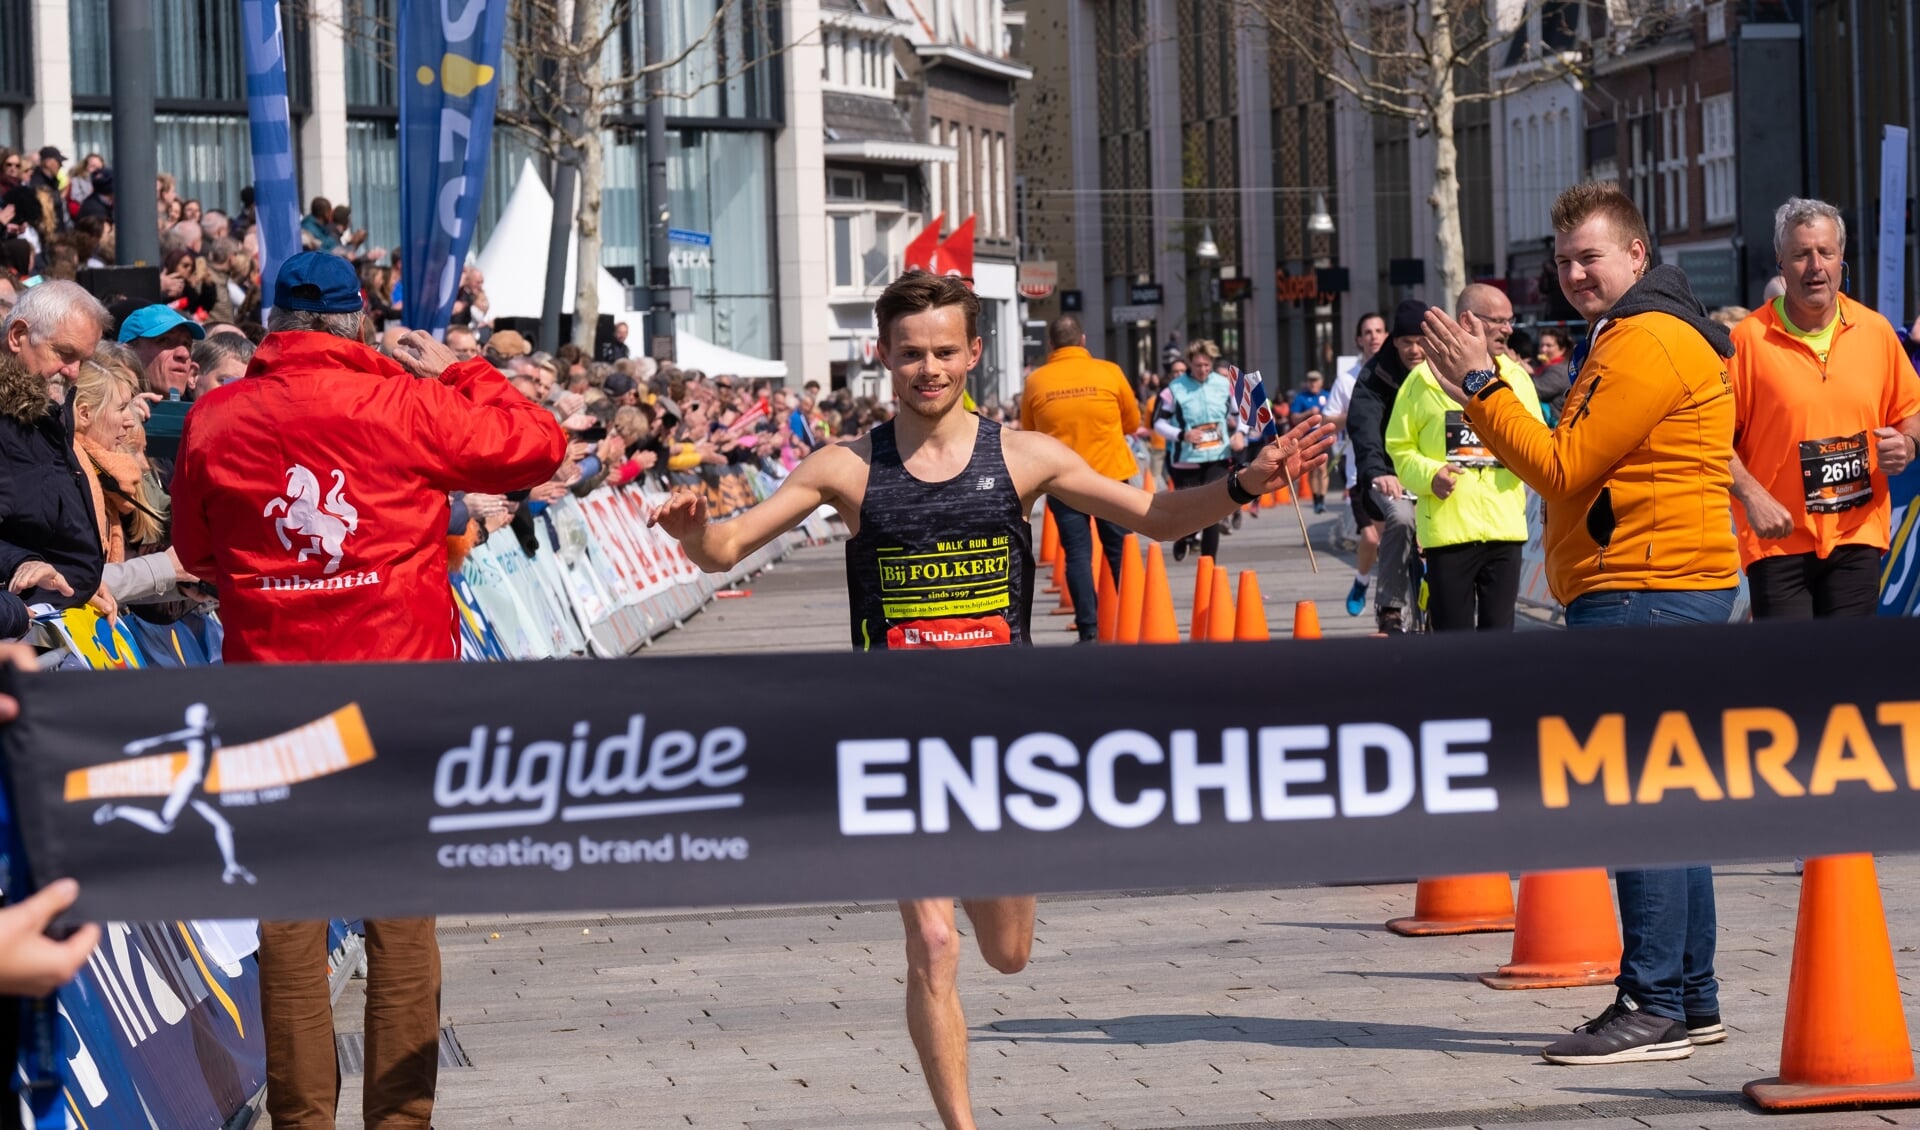 De Enschede Marathon is een evenement dat op de lijst van subsidies staat.